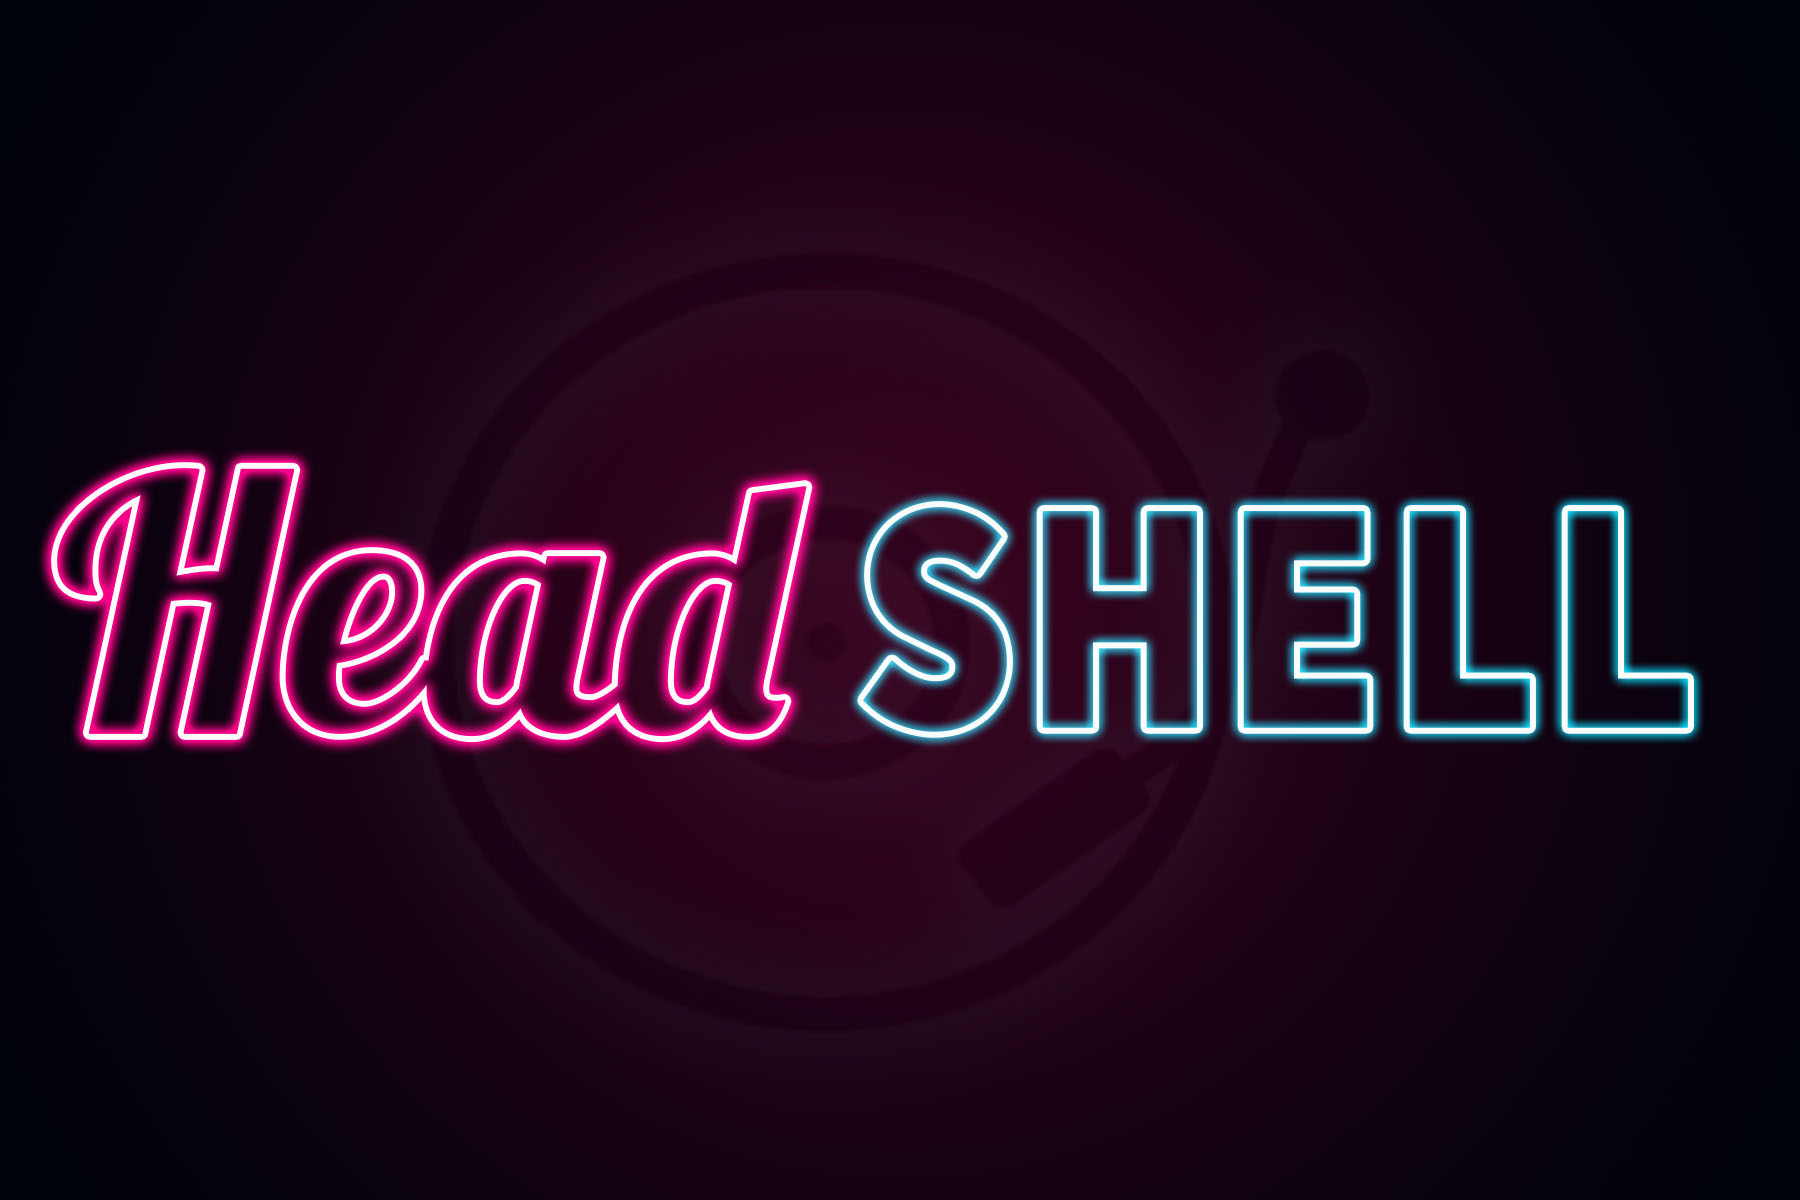 Head Shell Logo